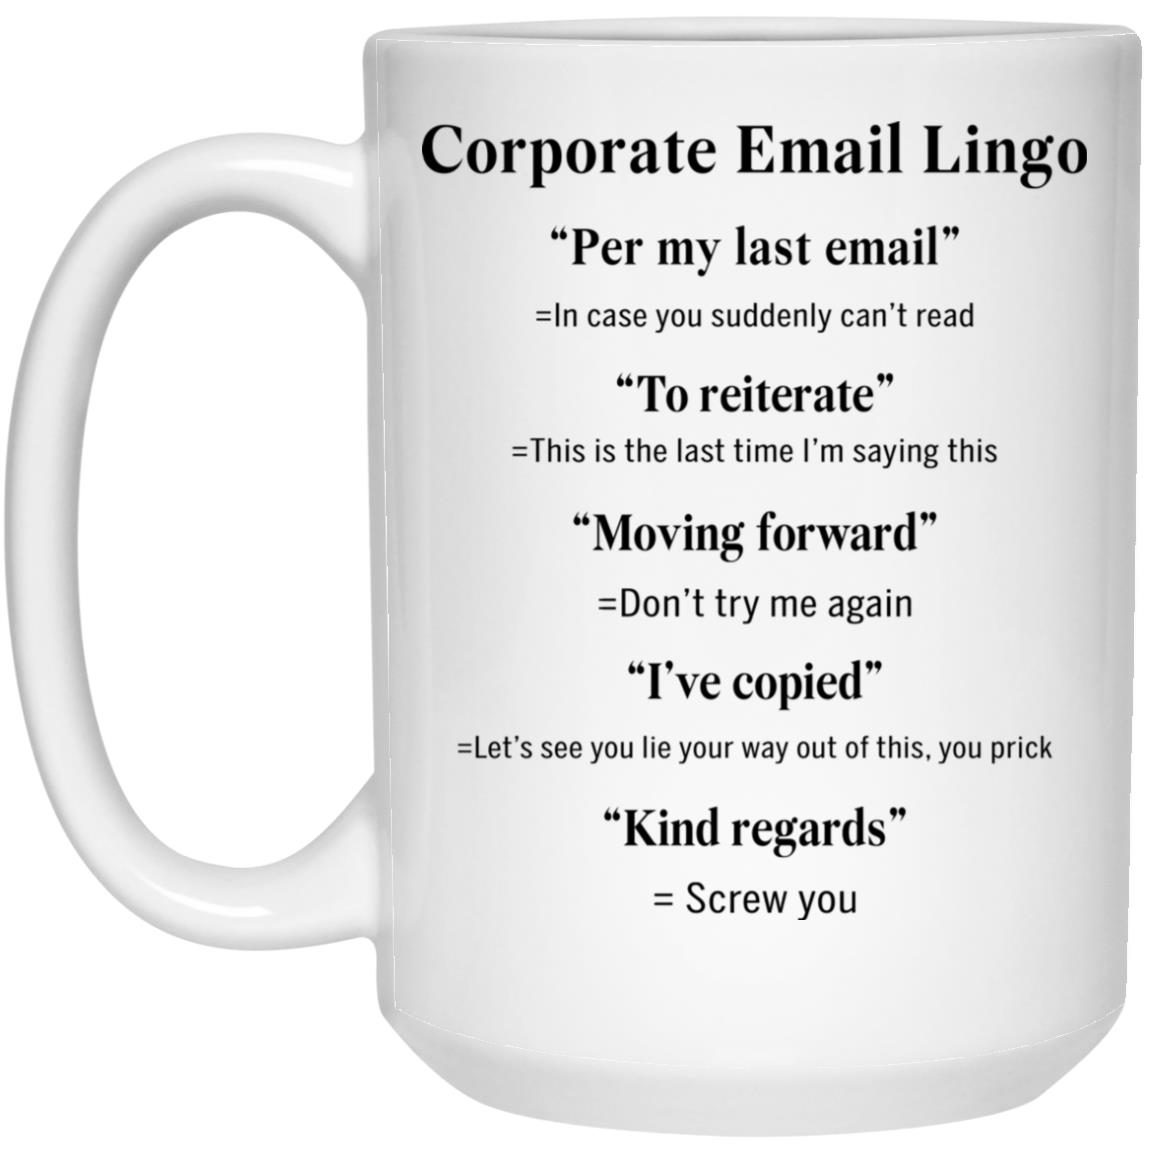 corporate email lingo translator